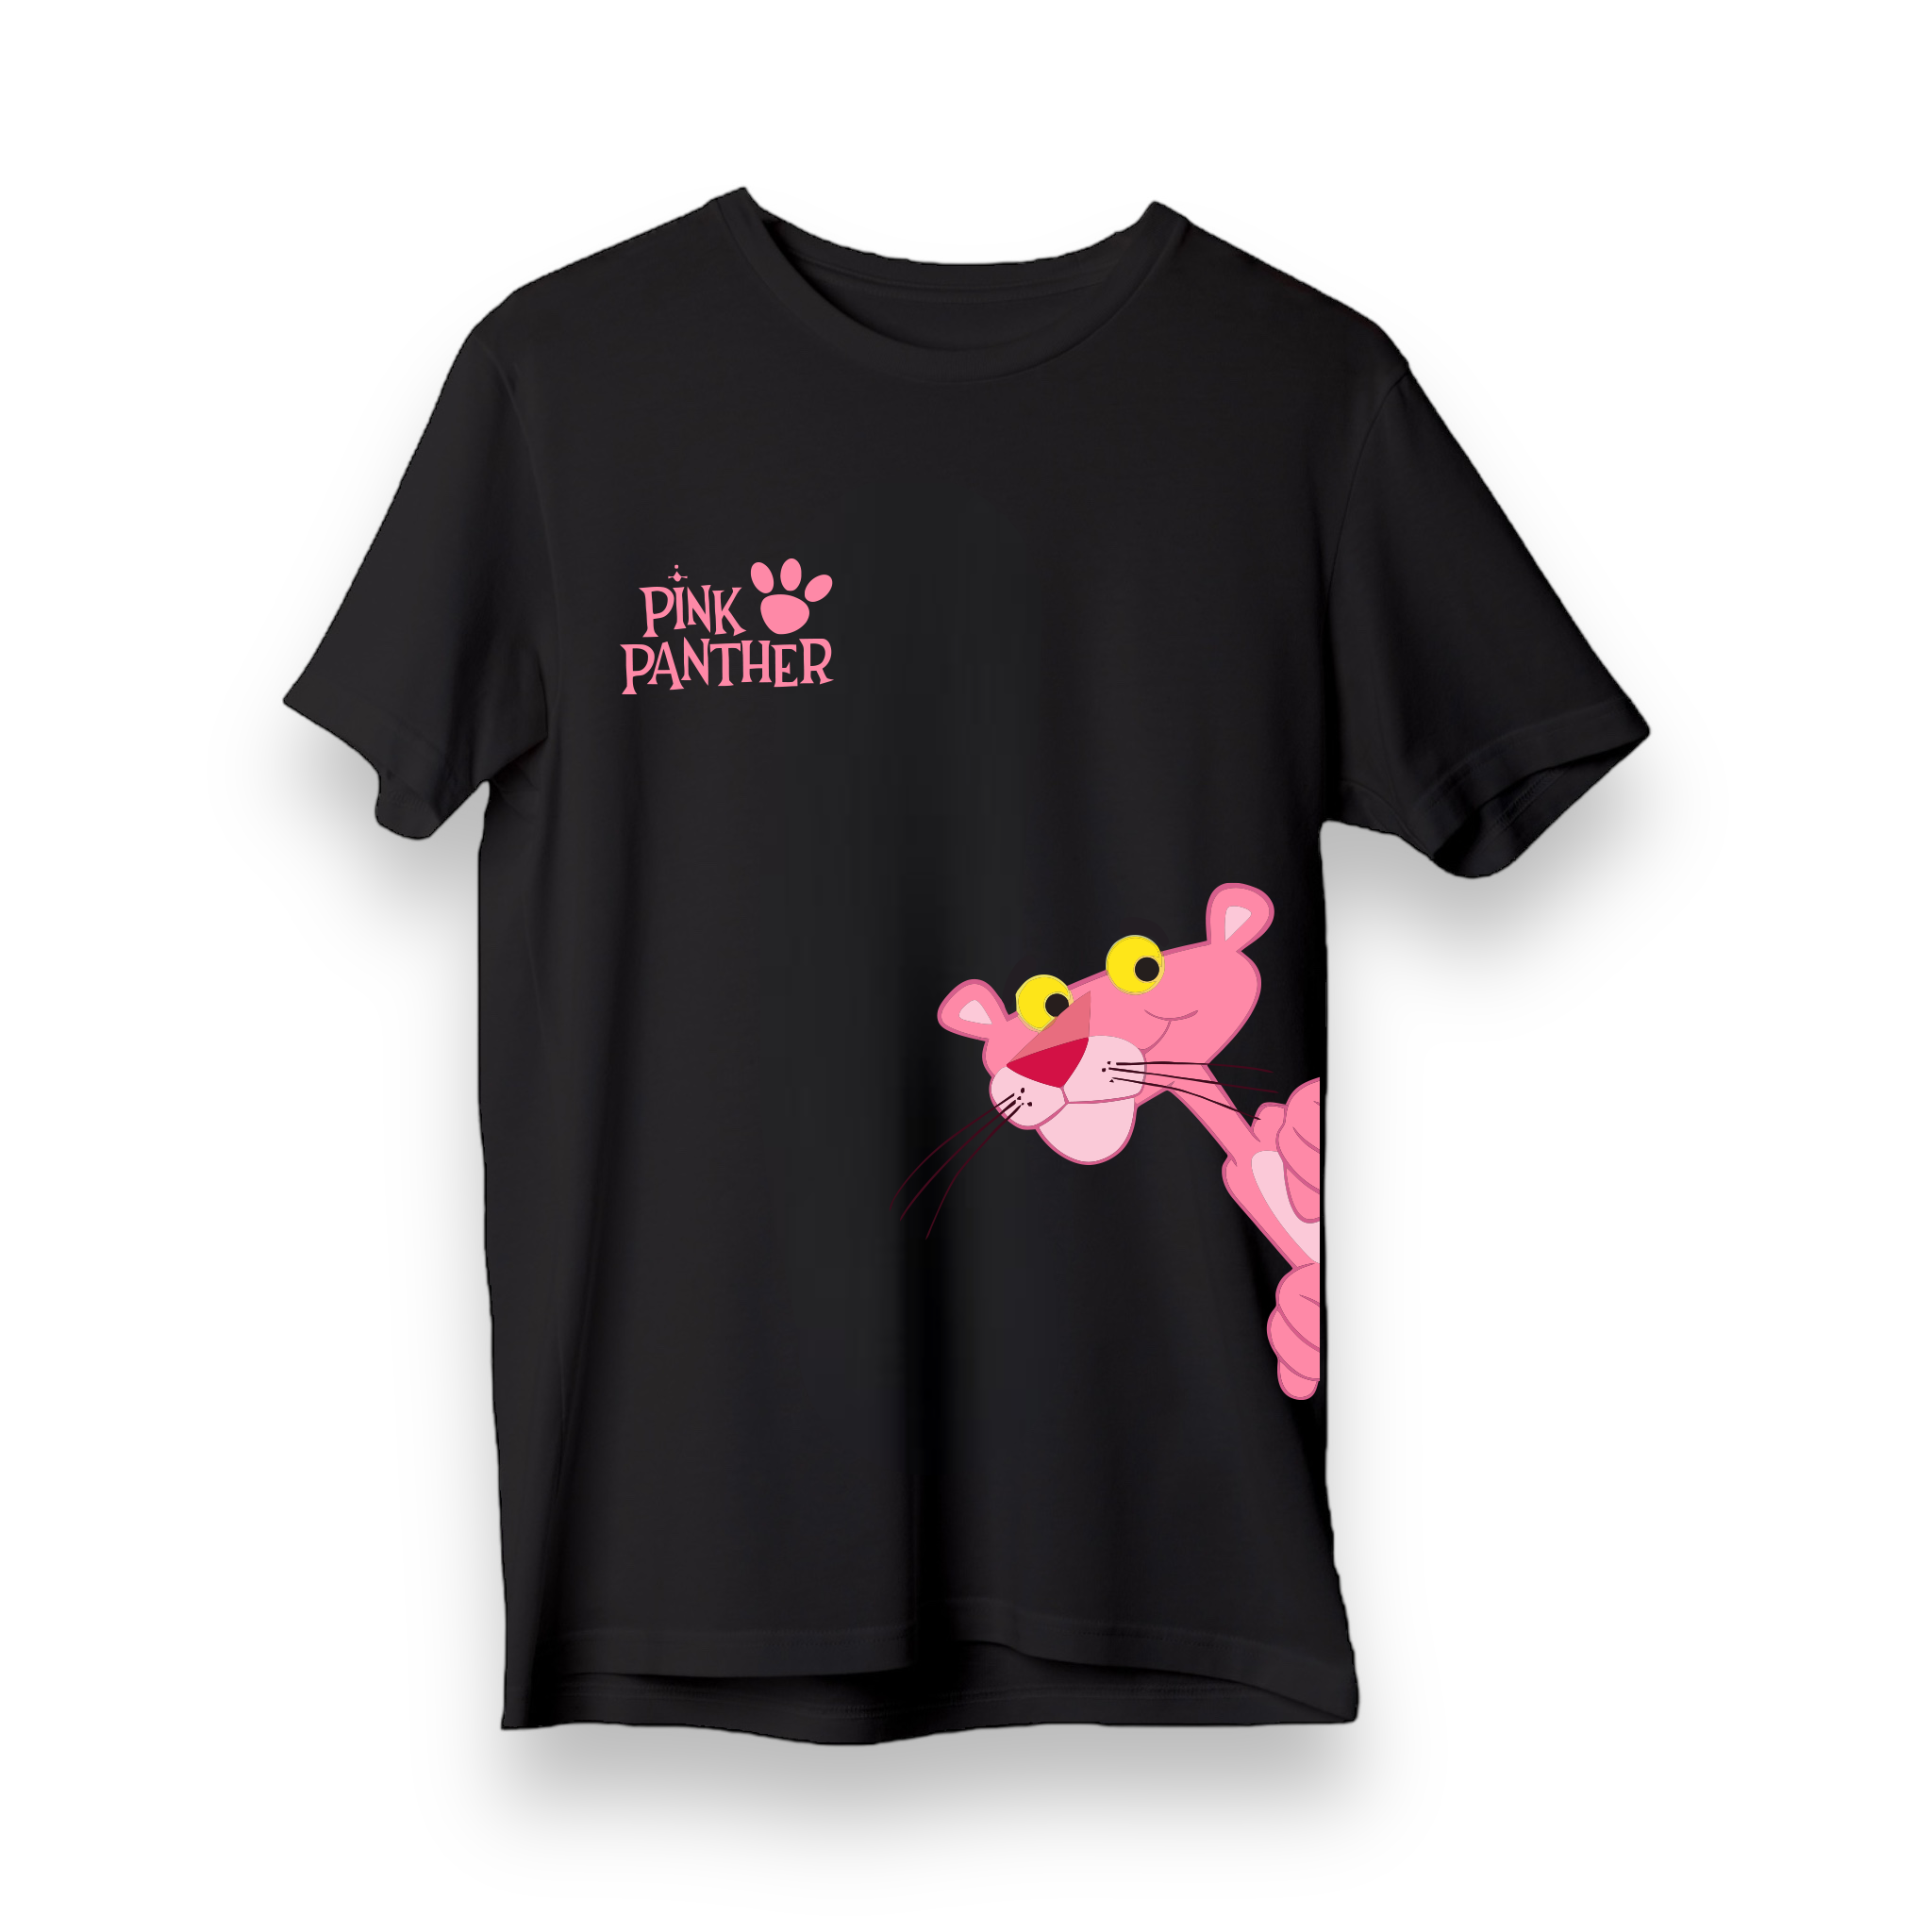 Pink Panther - Regular T-Shirt